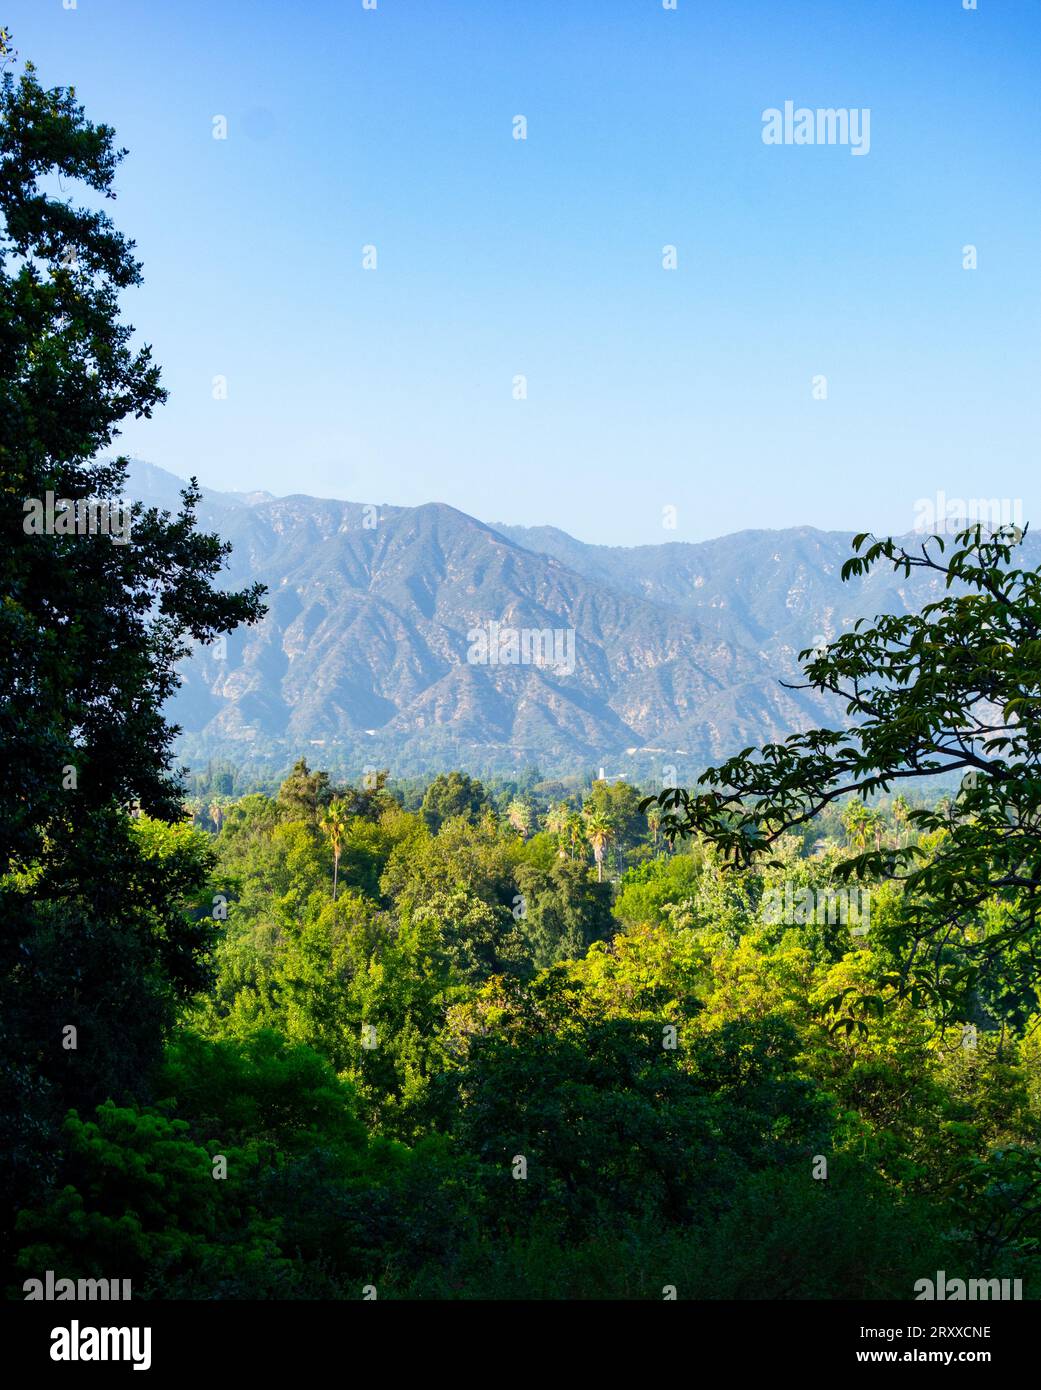 Angeles National Forest und die San Bernardino Mountains im Hintergrund durch die blühenden Bäume gesehen. Fotos, die in Arcadia, Kalifornien, aufgenommen wurden Stockfoto